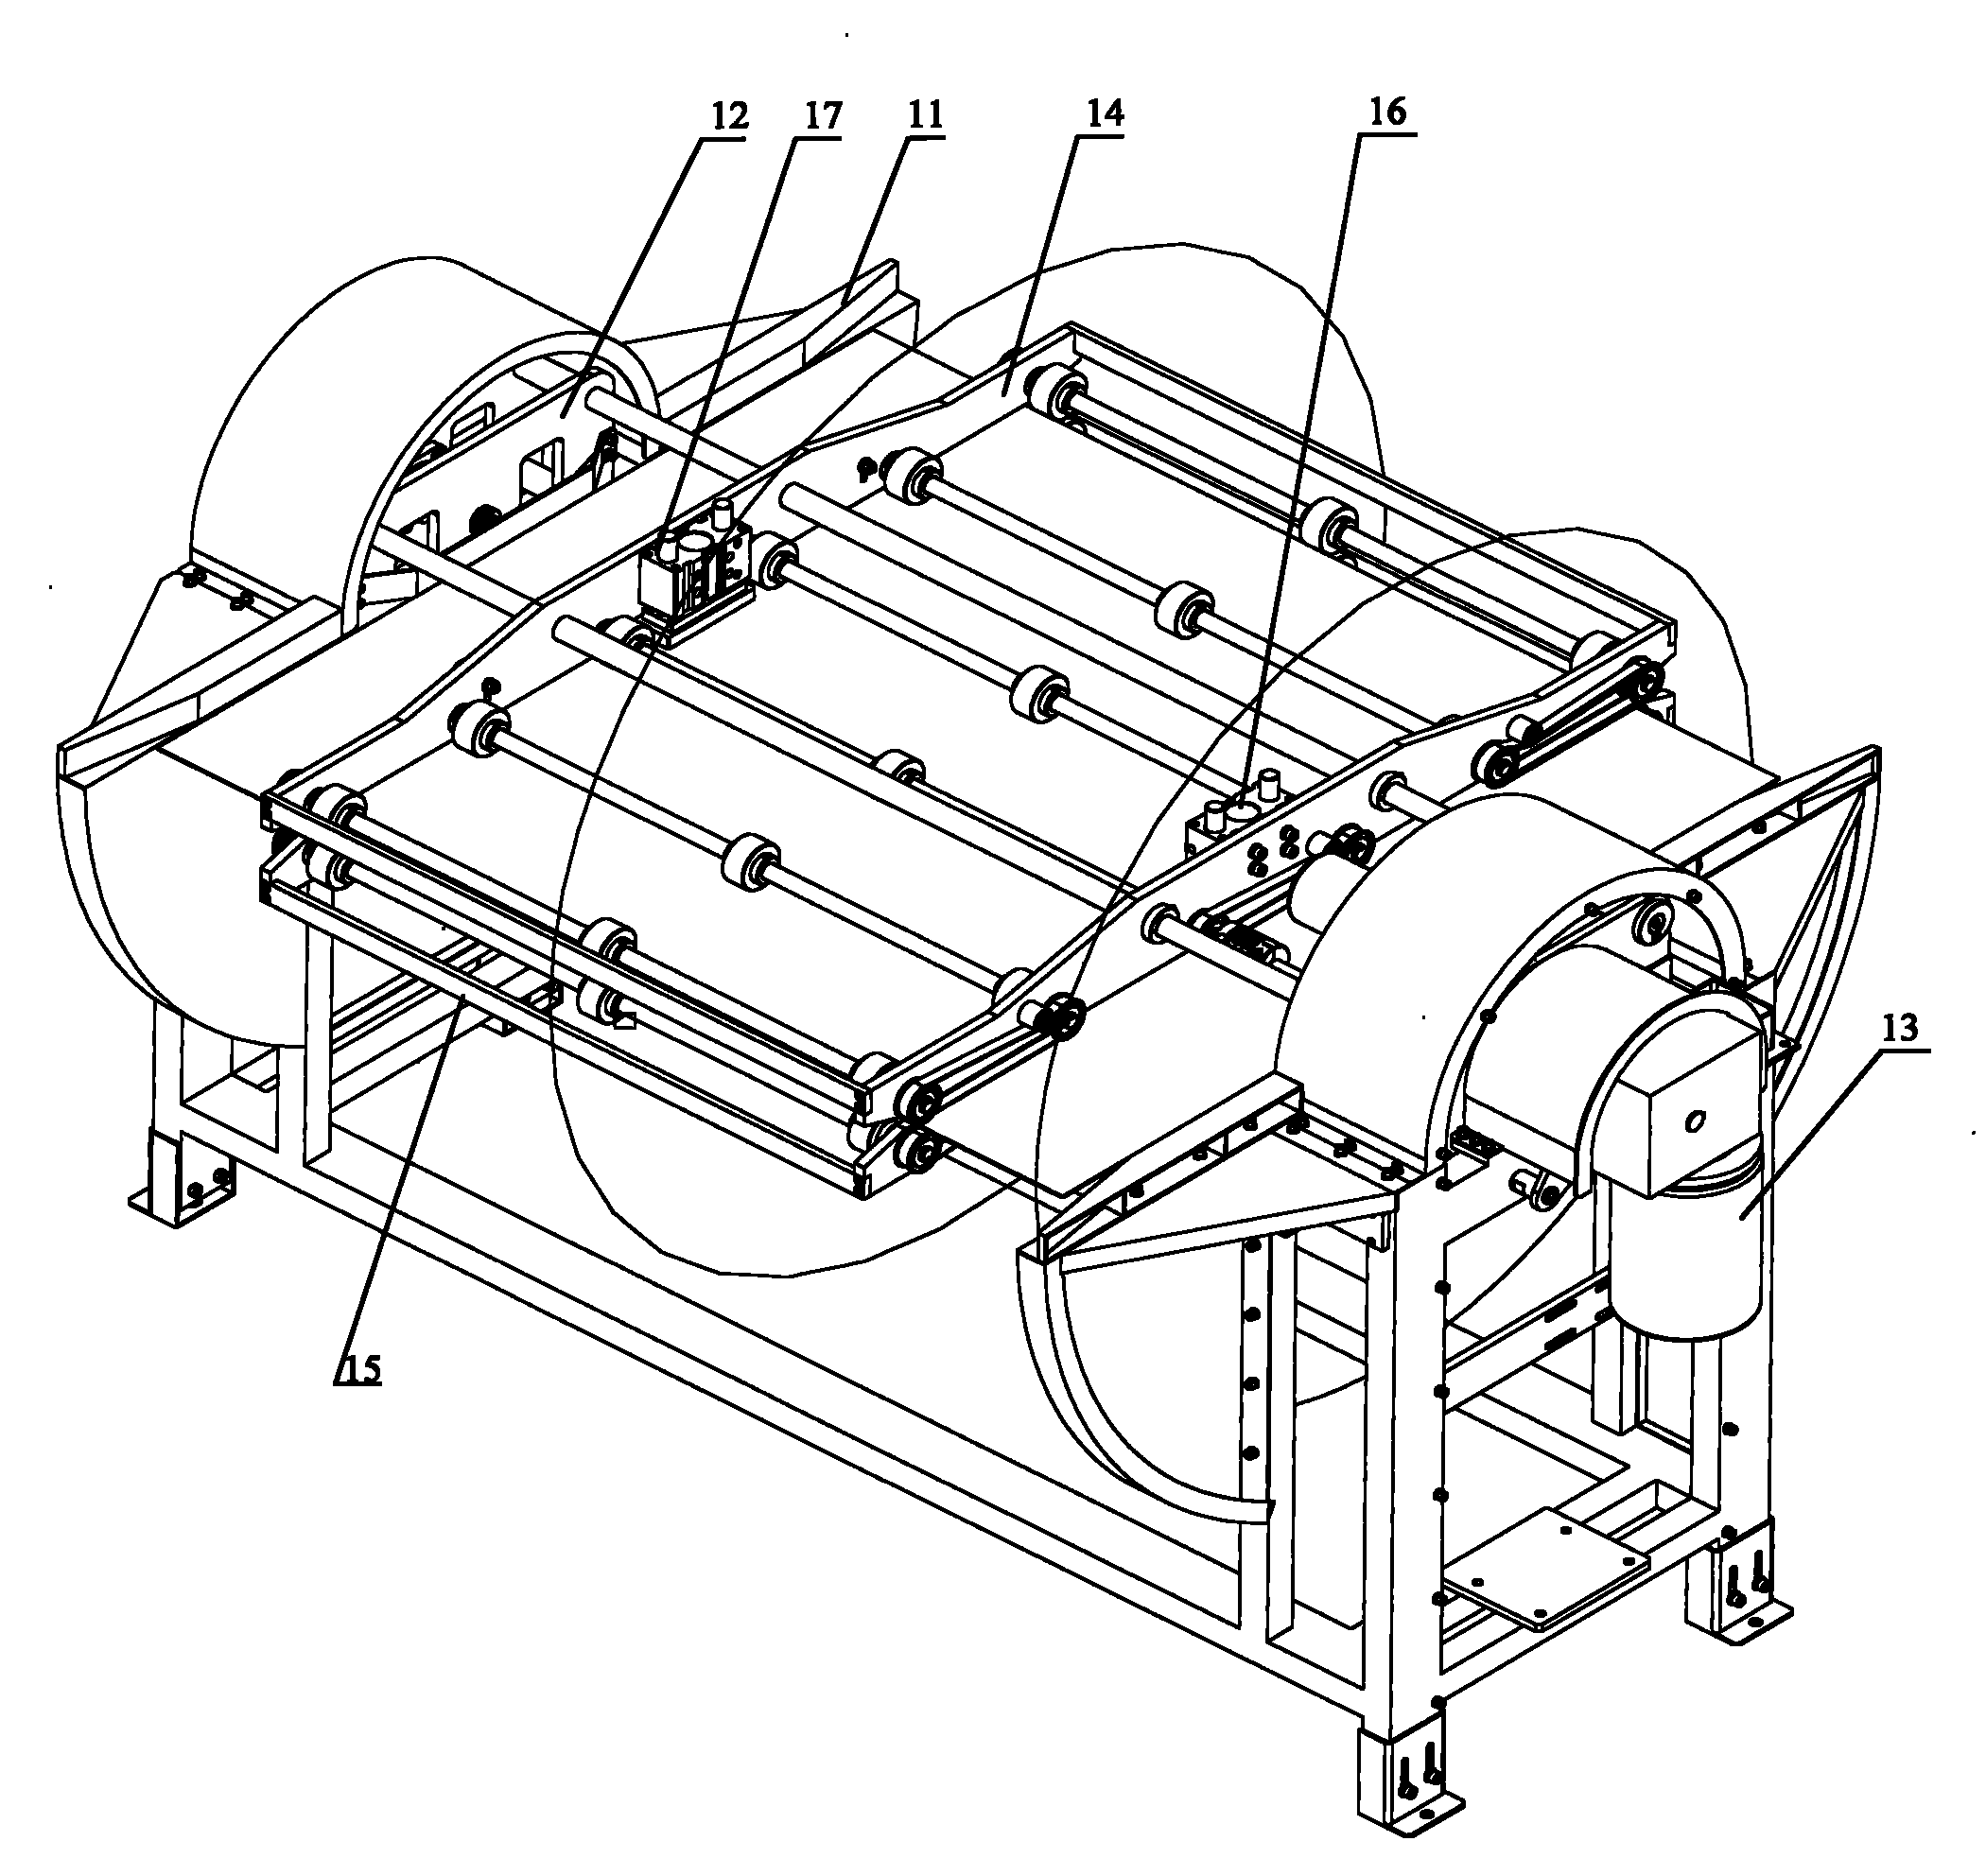 Panel turnover machine